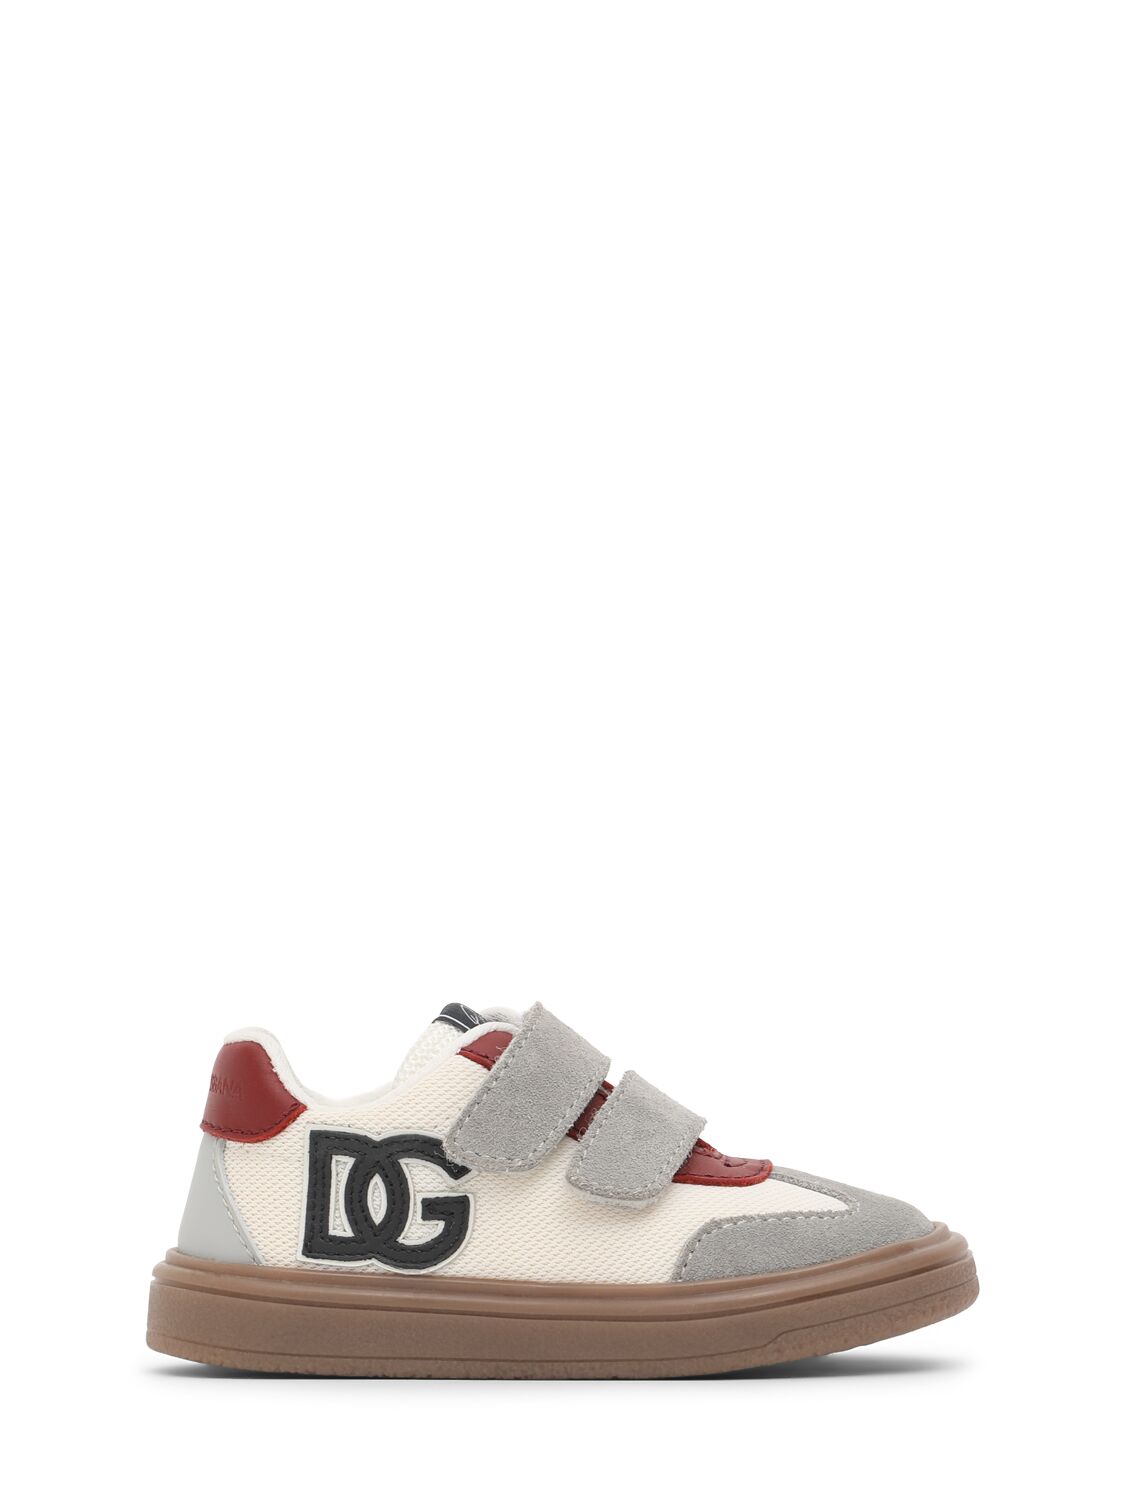 Dolce & Gabbana Logo Print Strap Sneakers In White/grey